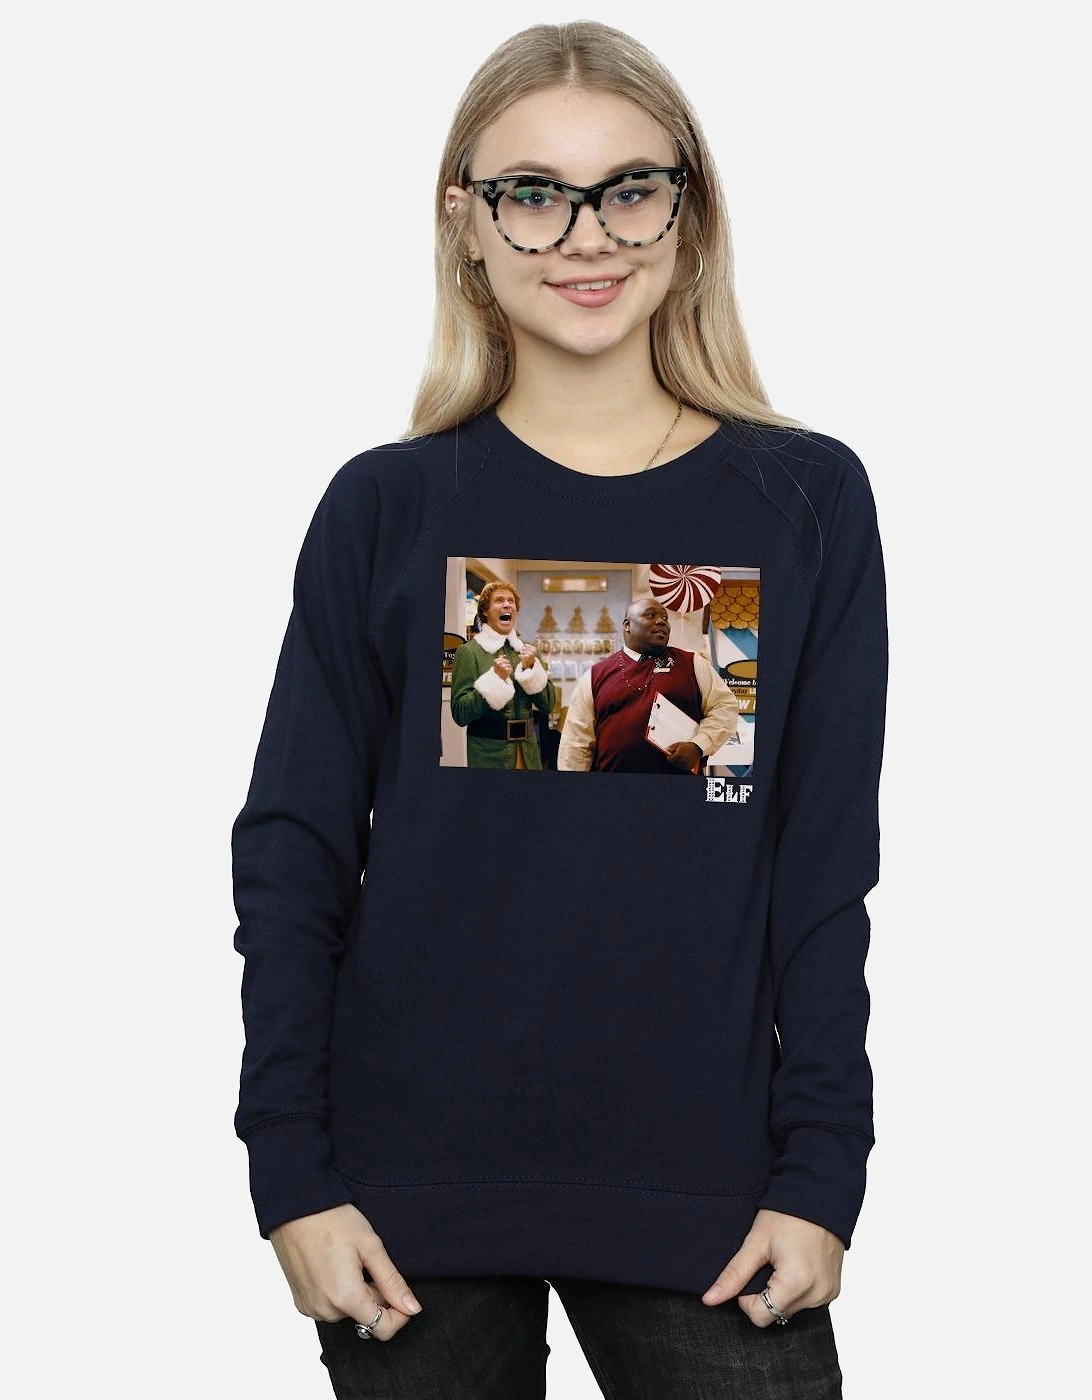 Womens/Ladies Christmas Store Cheer Sweatshirt